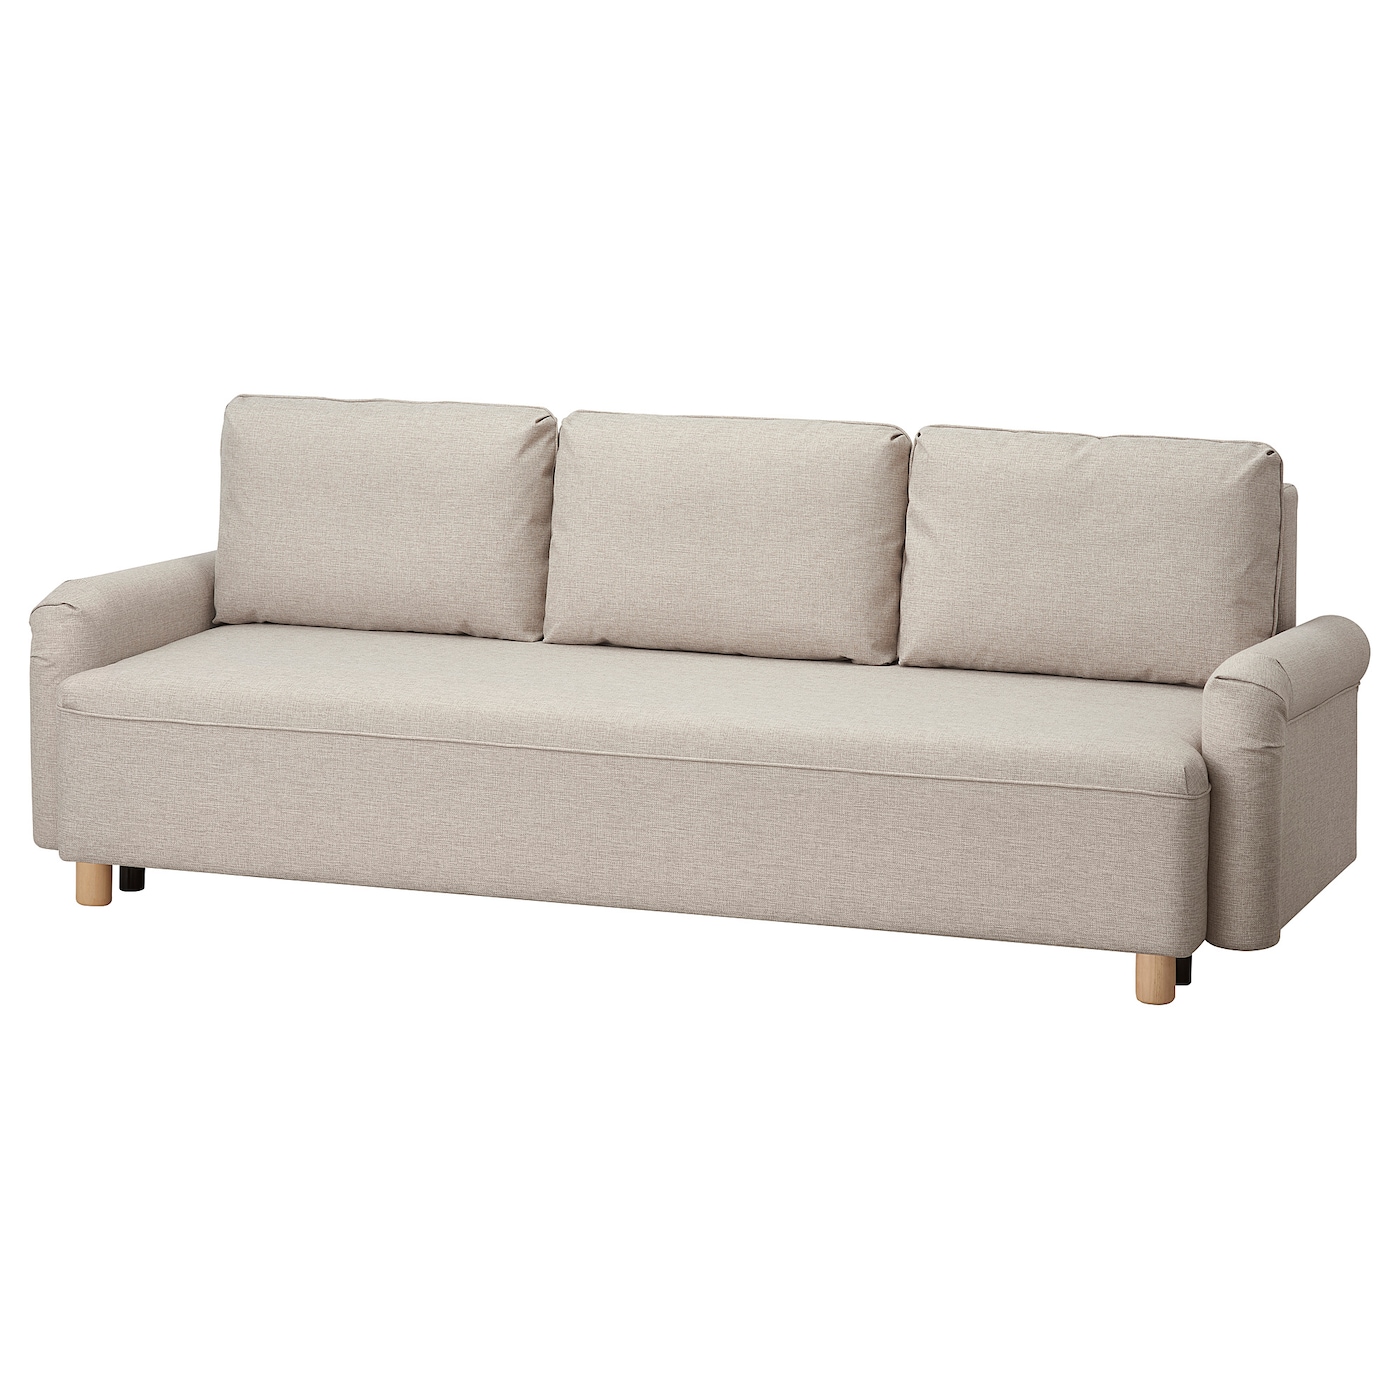 3-местный диван-кровать - IKEA GRIMHULT, 92x236см, бежевый, ГРИМХУЛЬТ ИКЕА